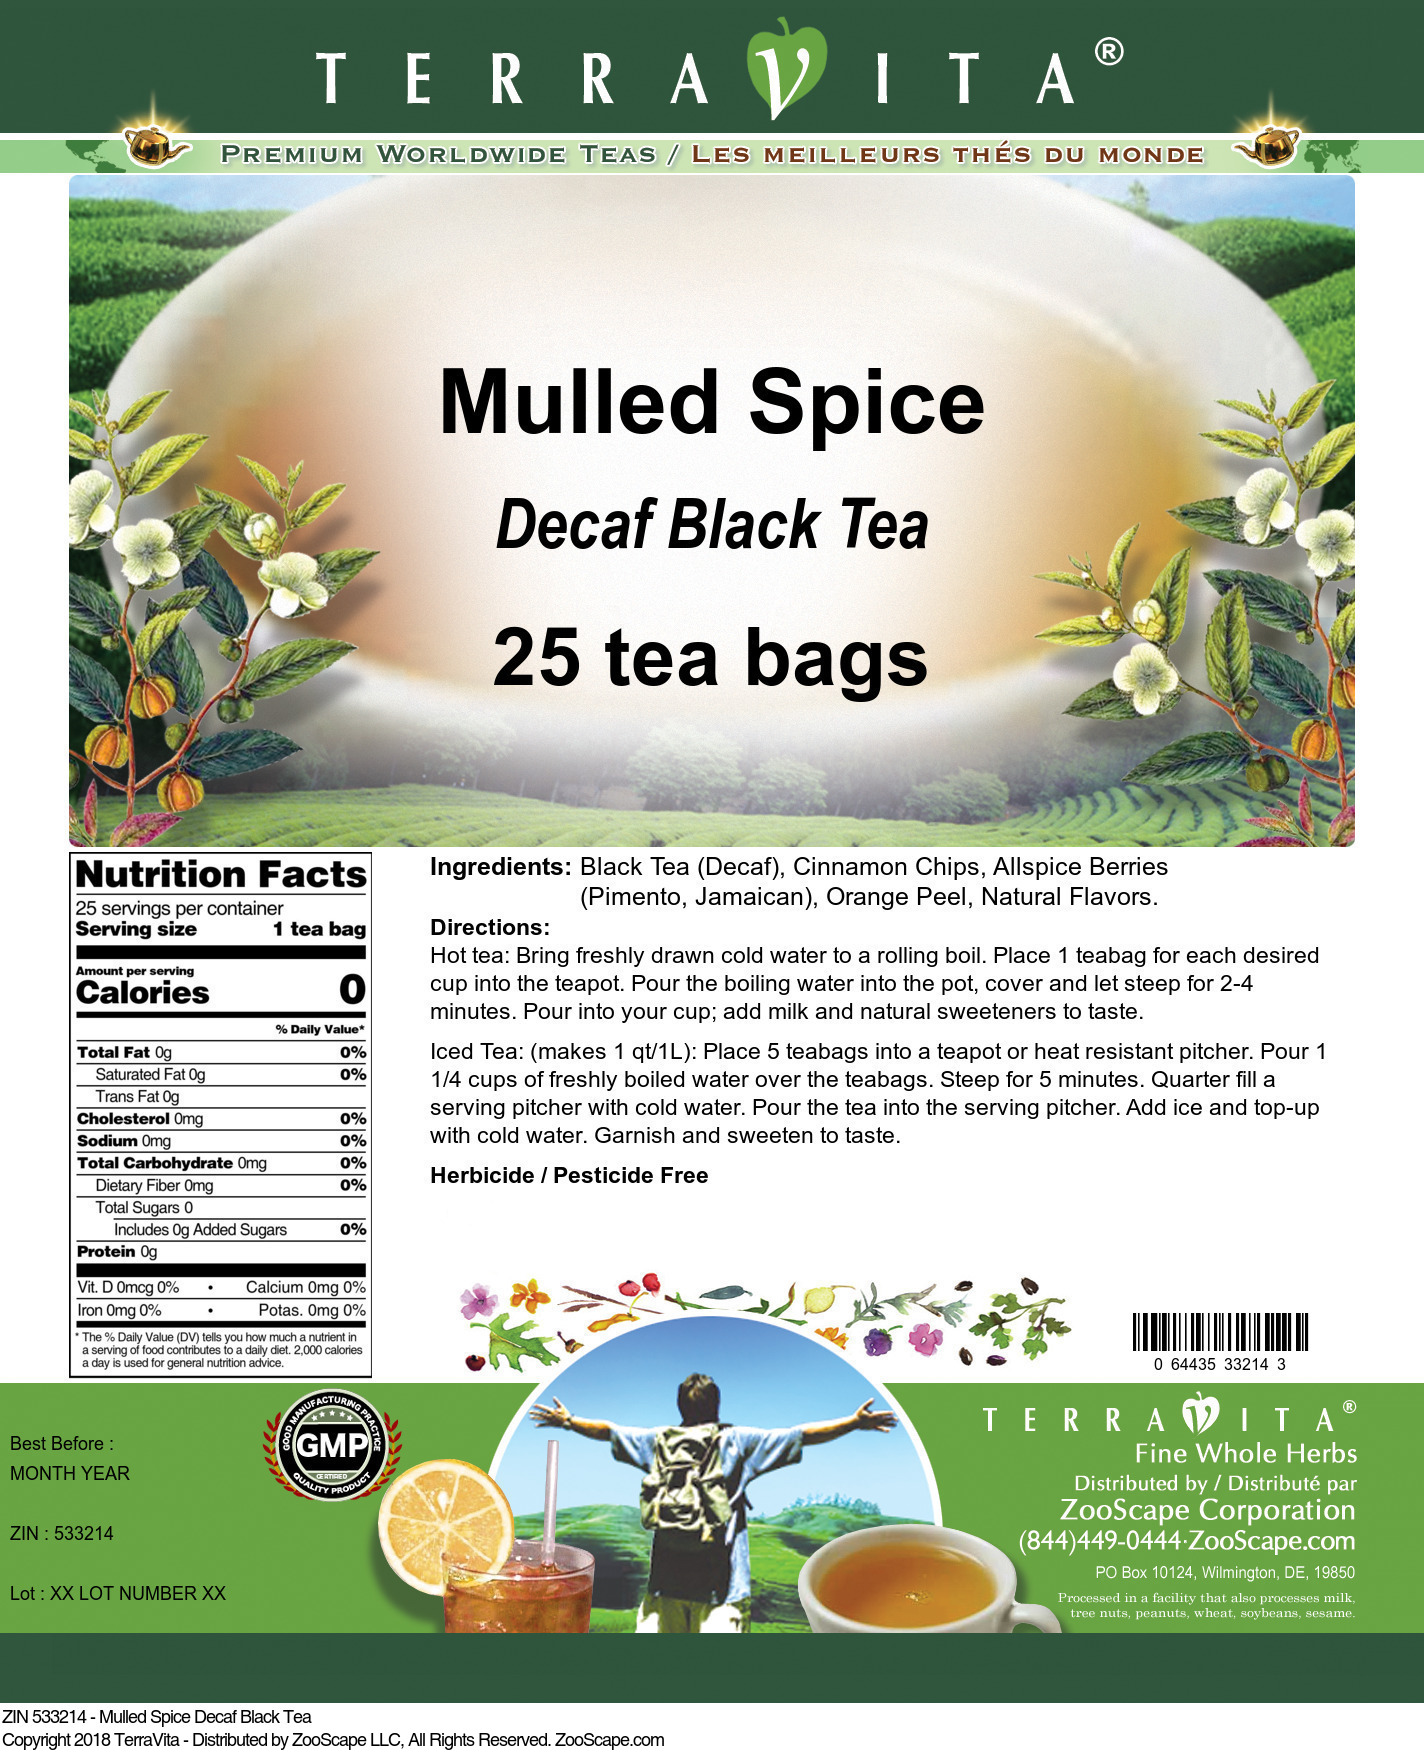 Mulled Spice Decaf Black Tea - Label